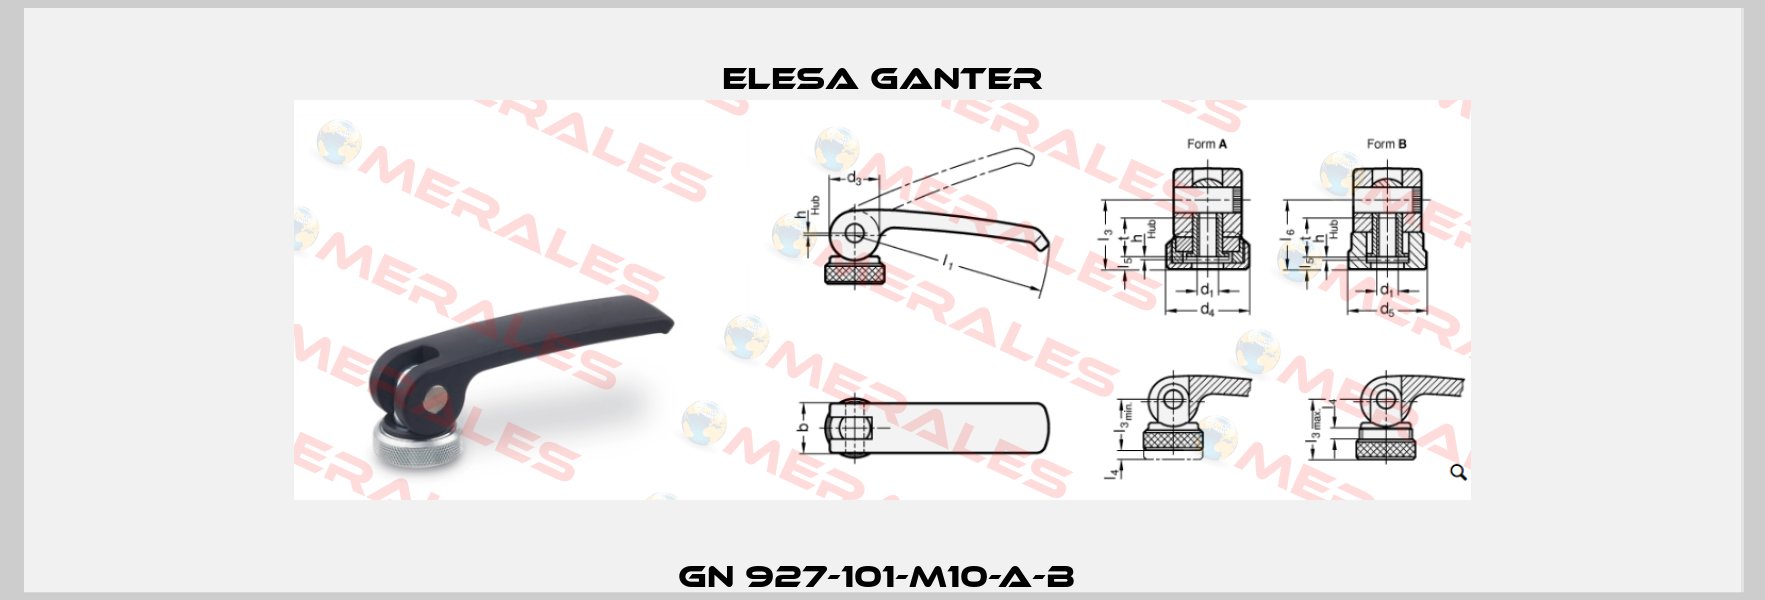 GN 927-101-M10-A-B  Elesa Ganter